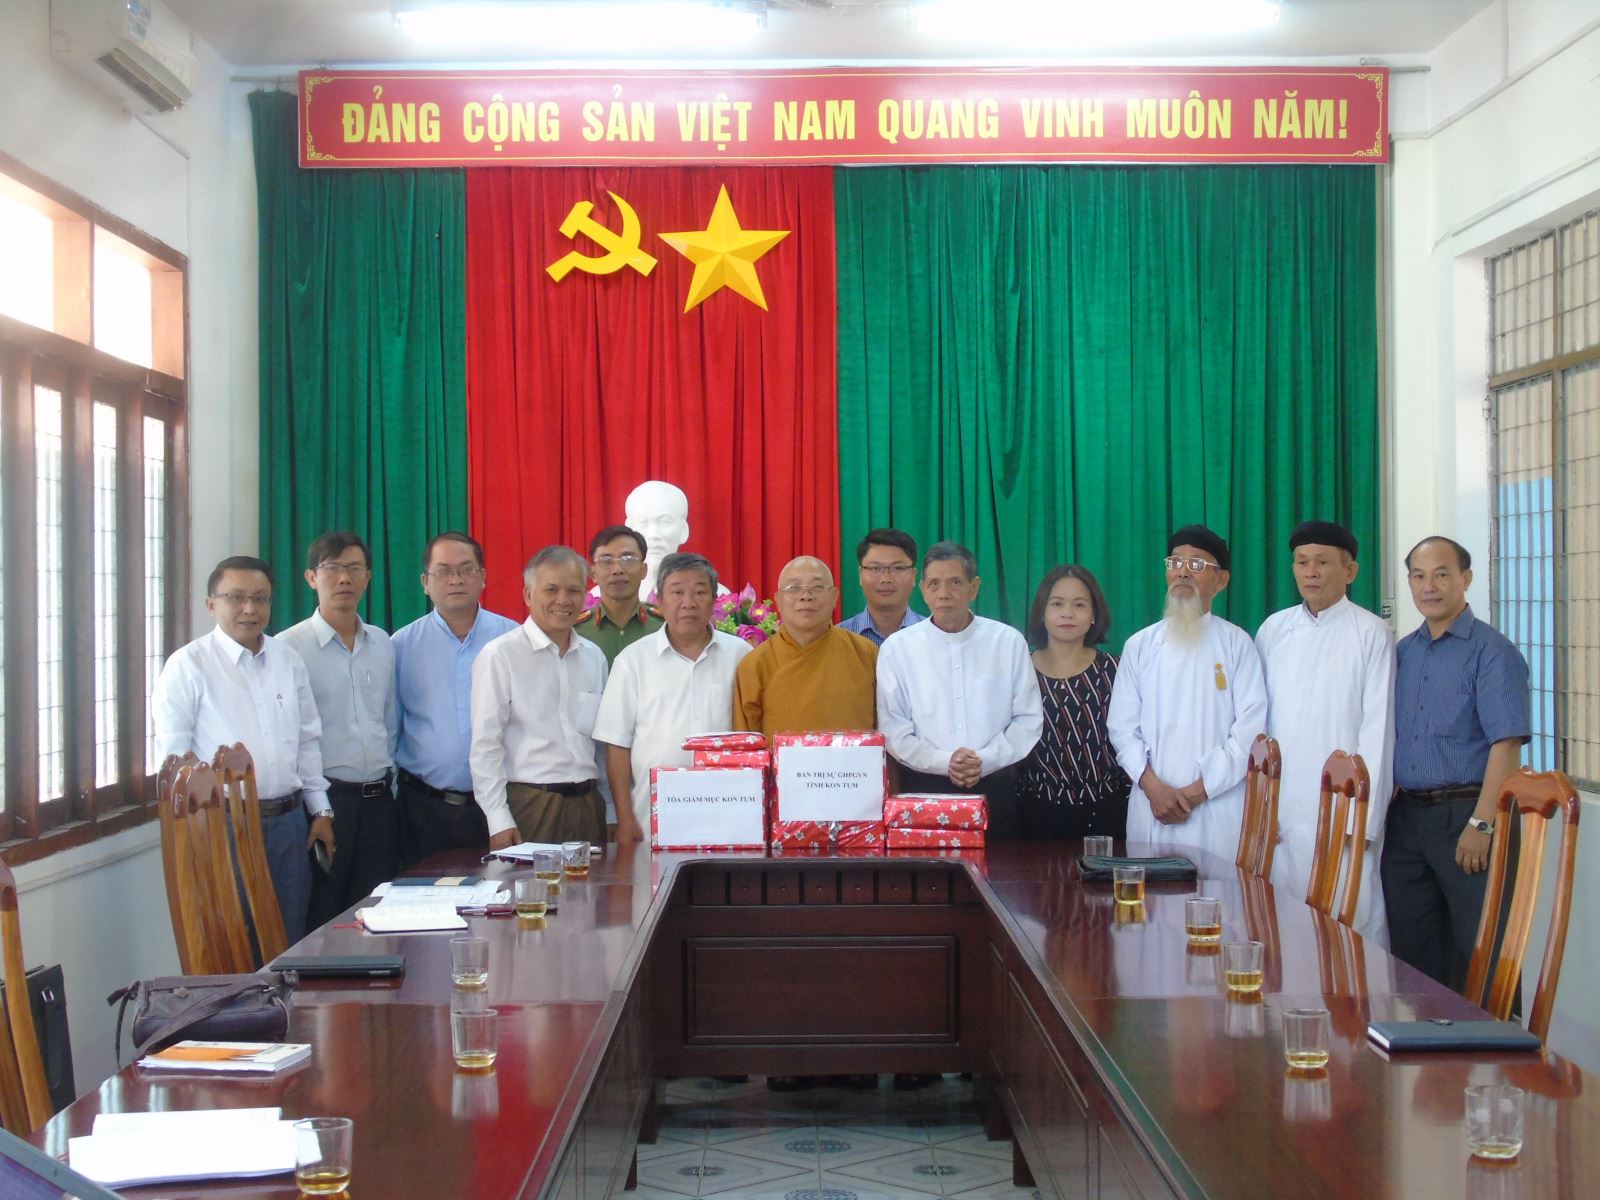 Tổ chức trao tặng cờ Tổ quốc cho các tổ chức tôn giáo trên địa bàn tỉnh Kon Tum